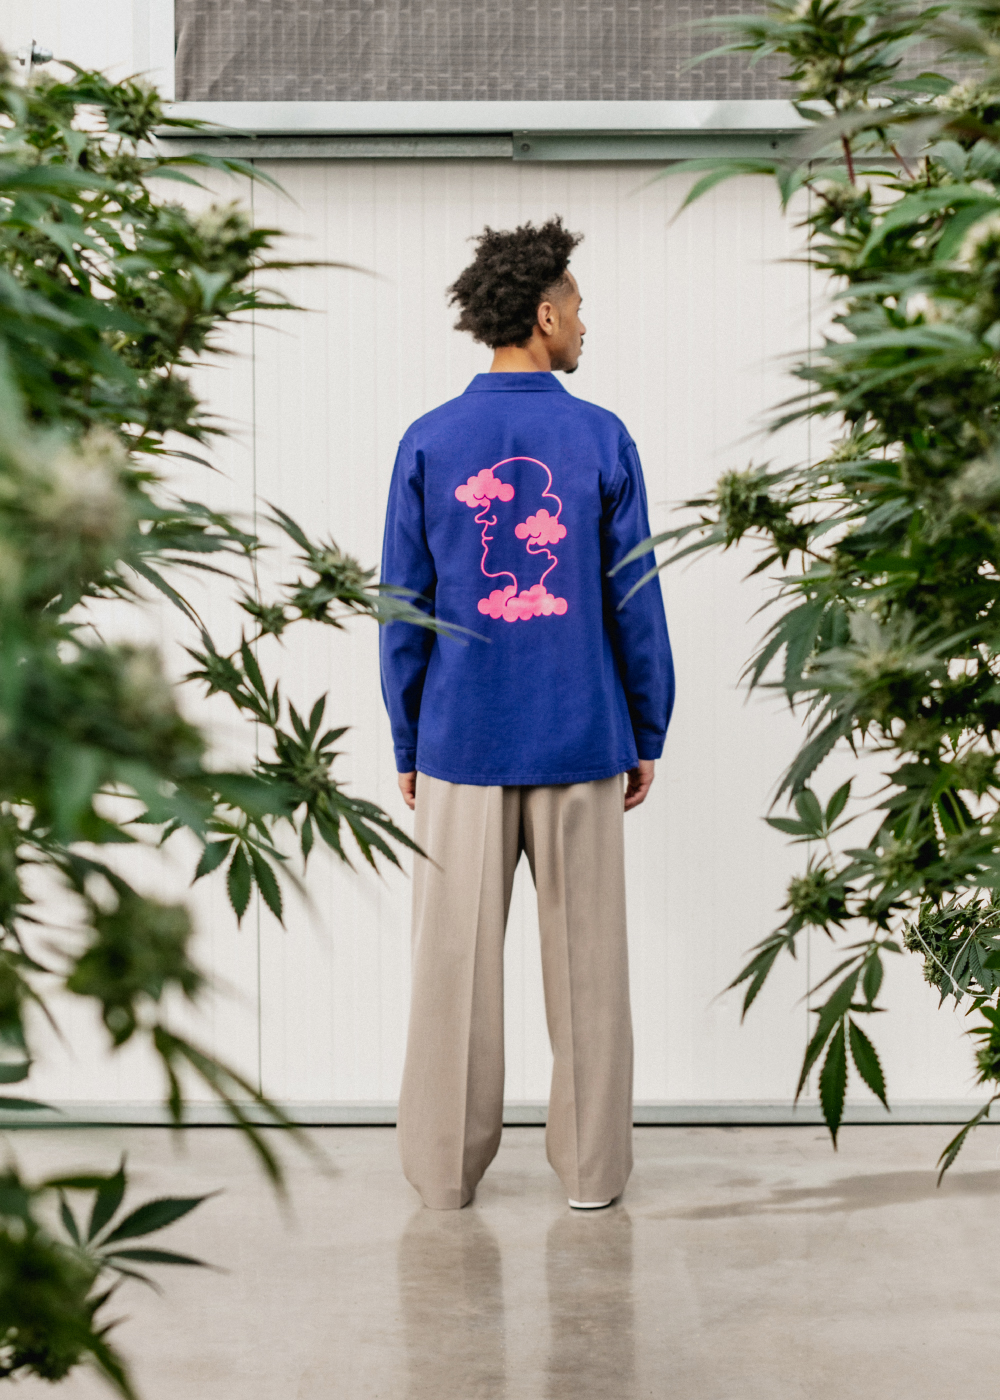 Model wearing Flowerhood garment in greenhouse